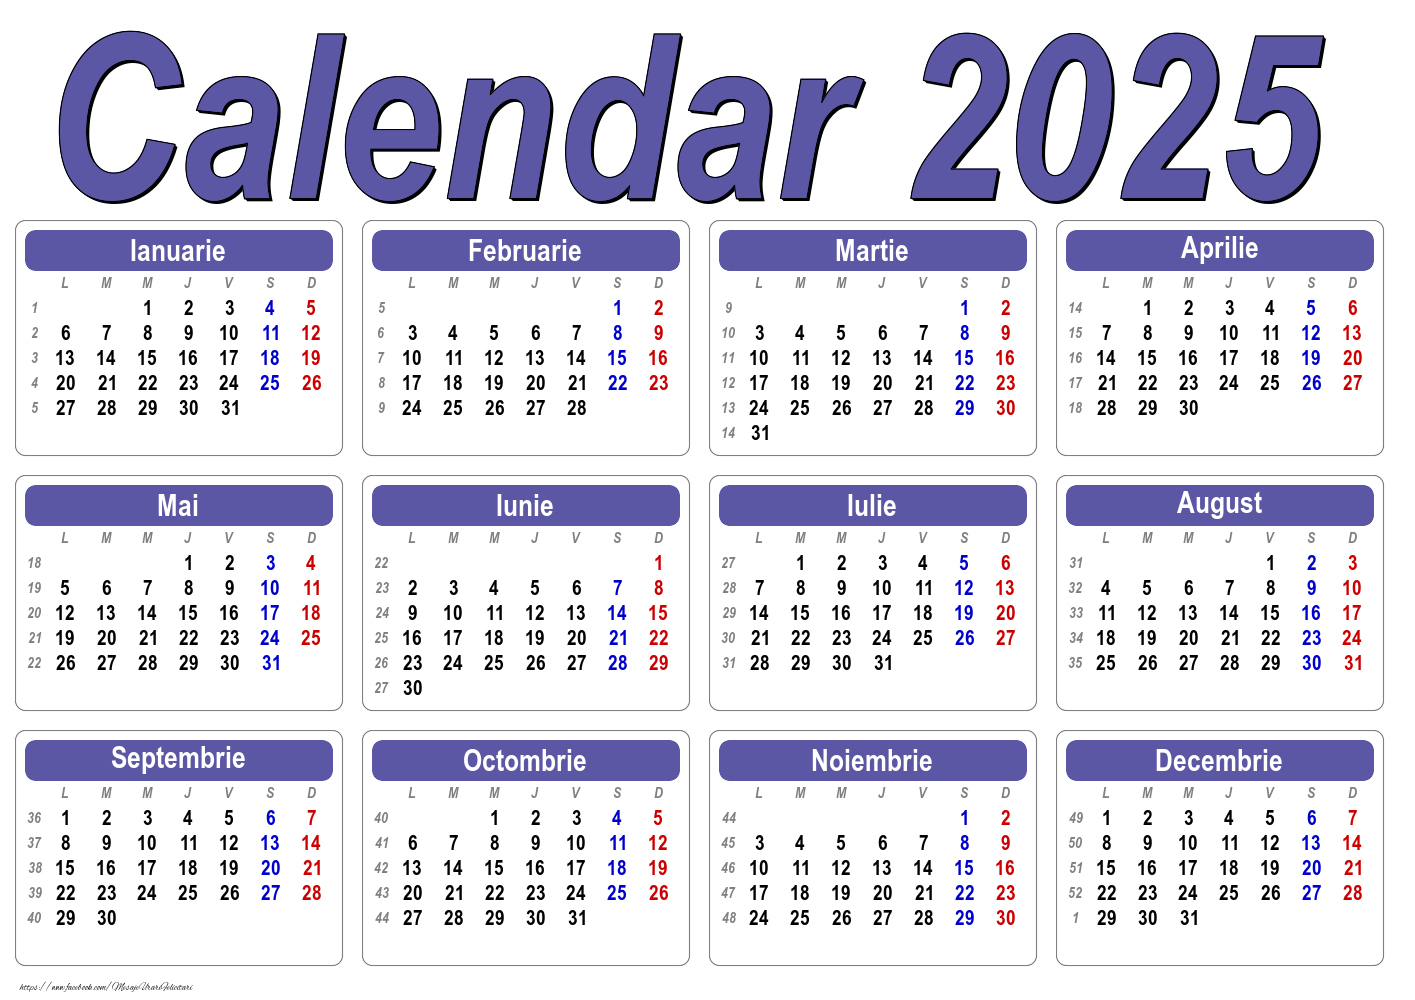 Calendar 2025 - Clasic - Model 0045